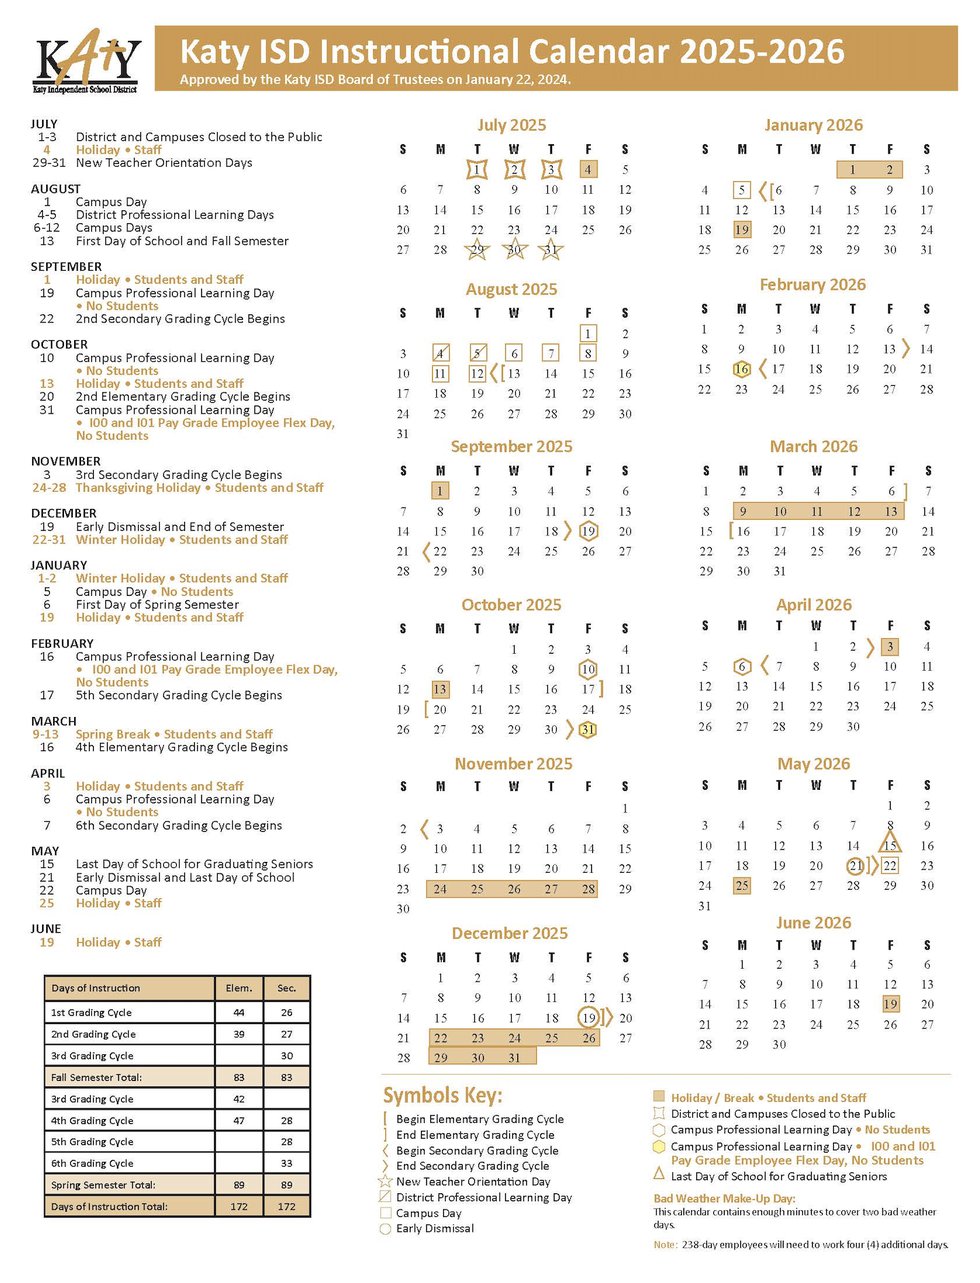 The Katy ISD 2025-2-26 Instructional Calendar